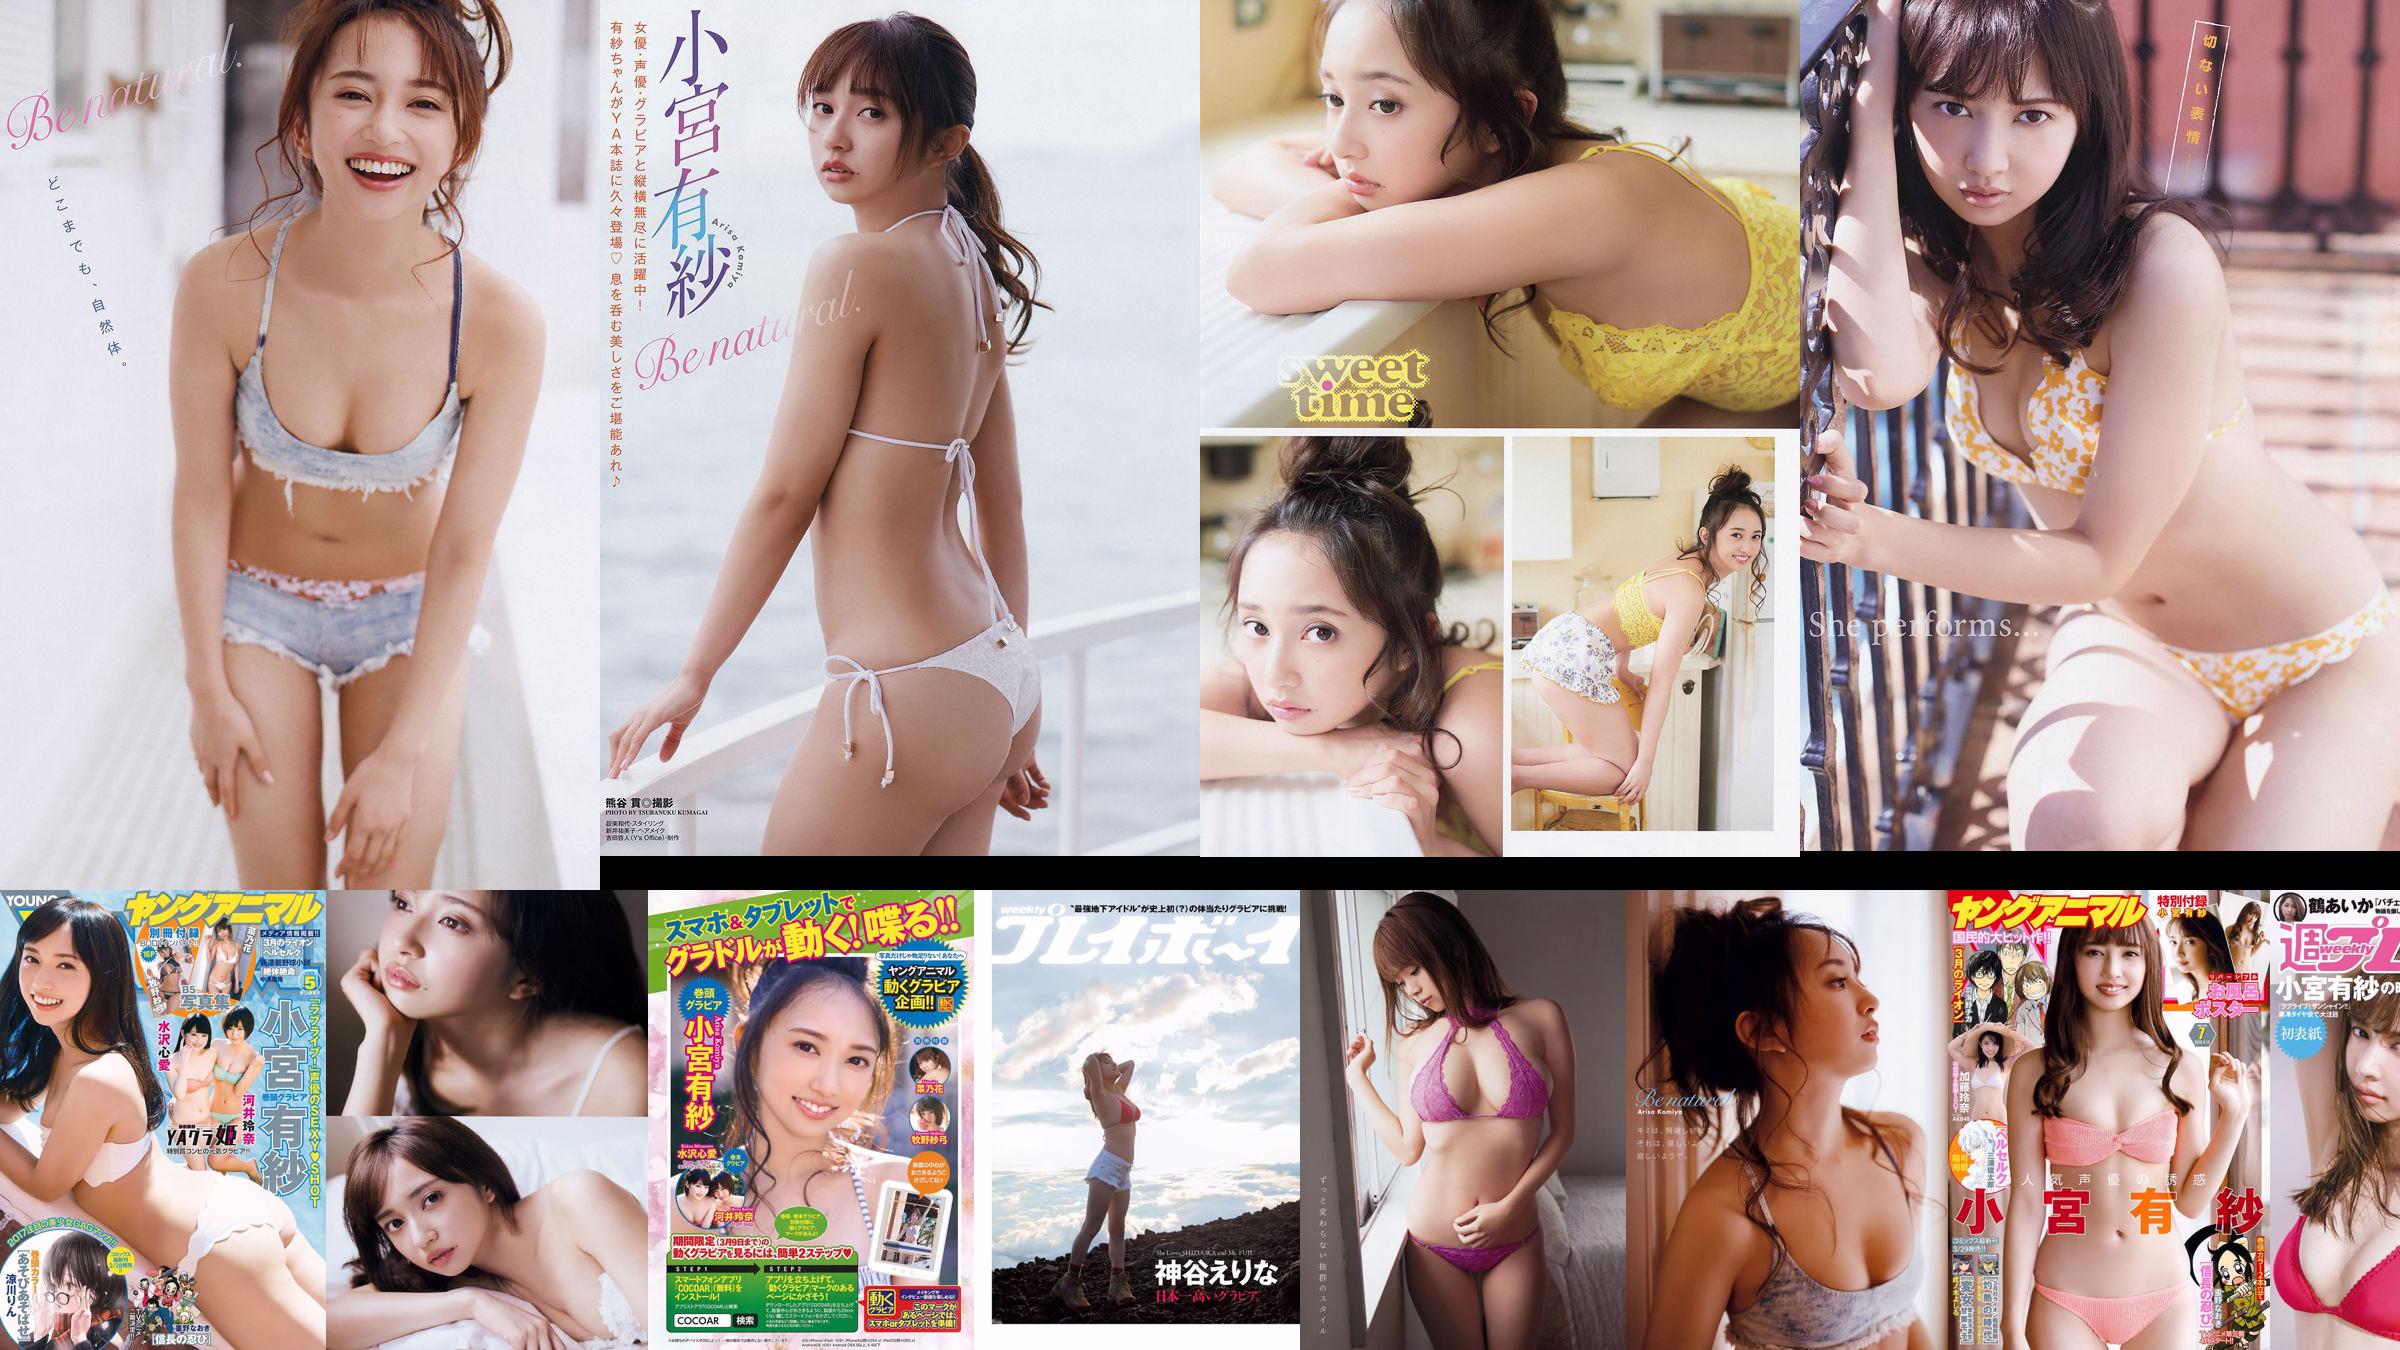 Arisa Komiya Yuna Sekine [Young Animal] 2018 No.20 Photo Magazine No.bb6975 หน้า 1